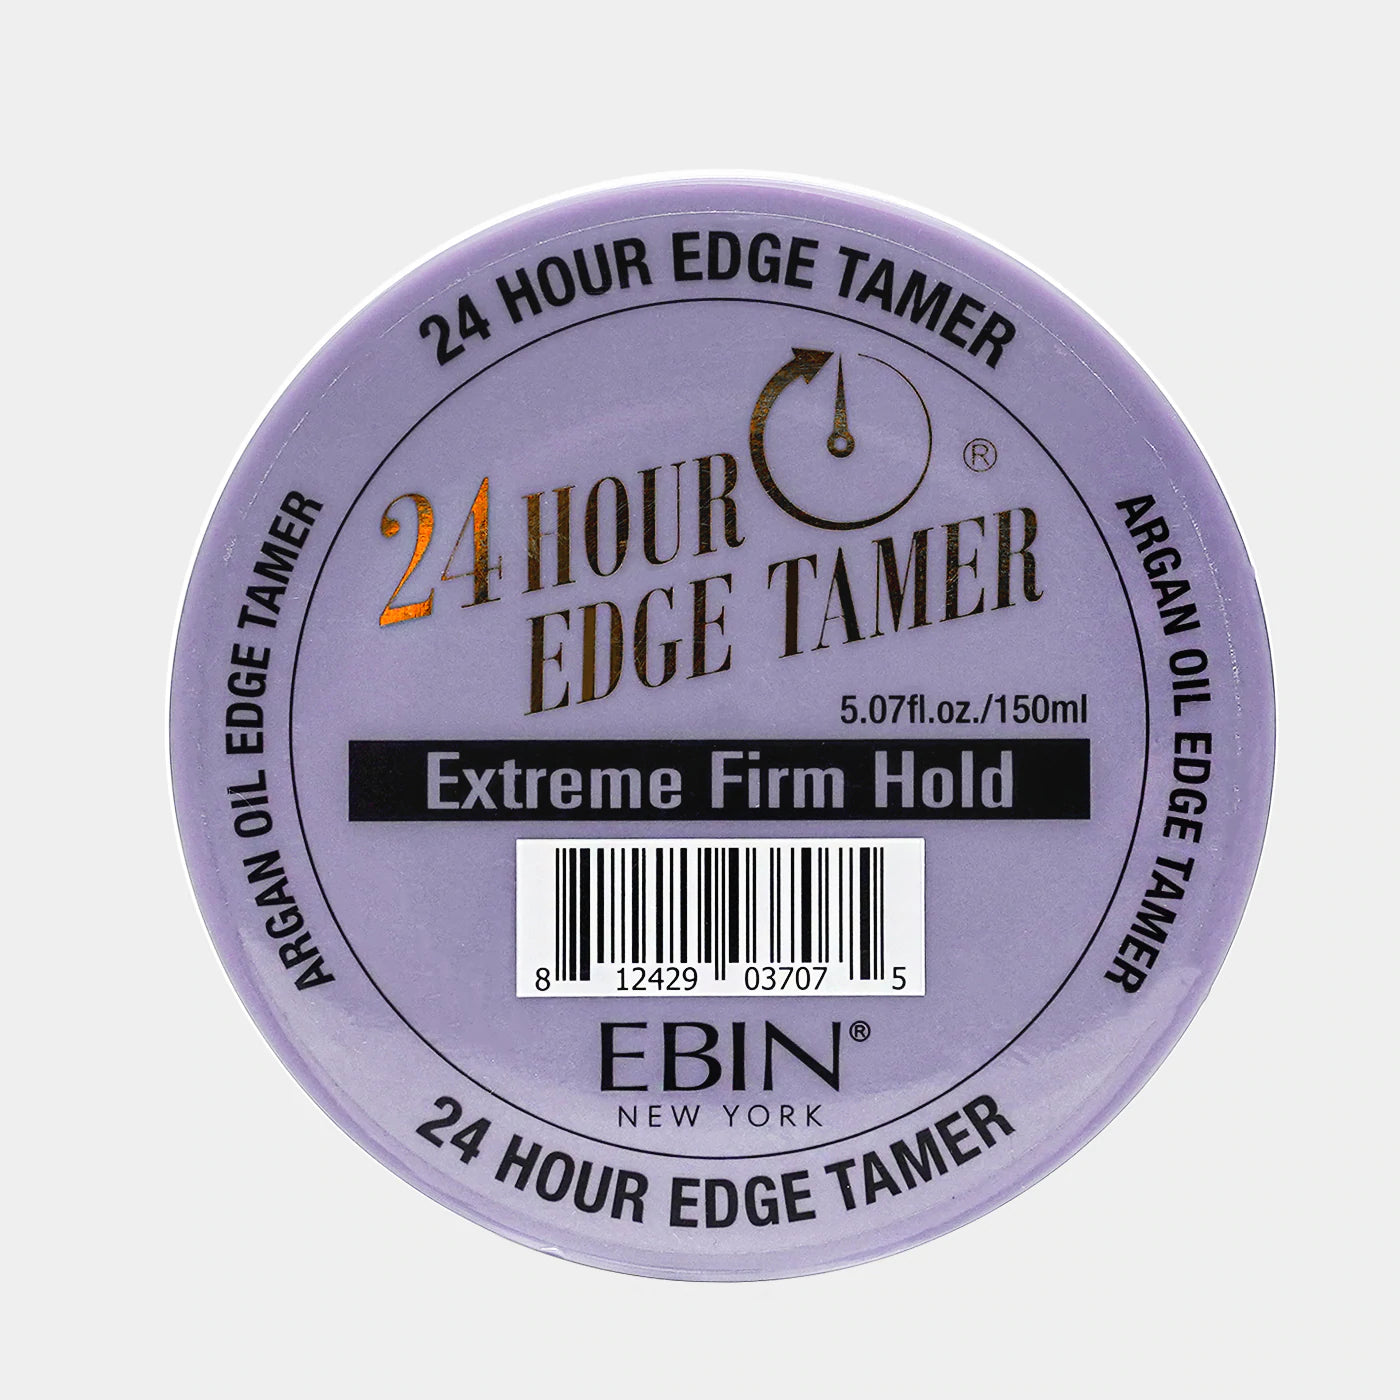 EBIN 24 HR Edge Tamer 150ML